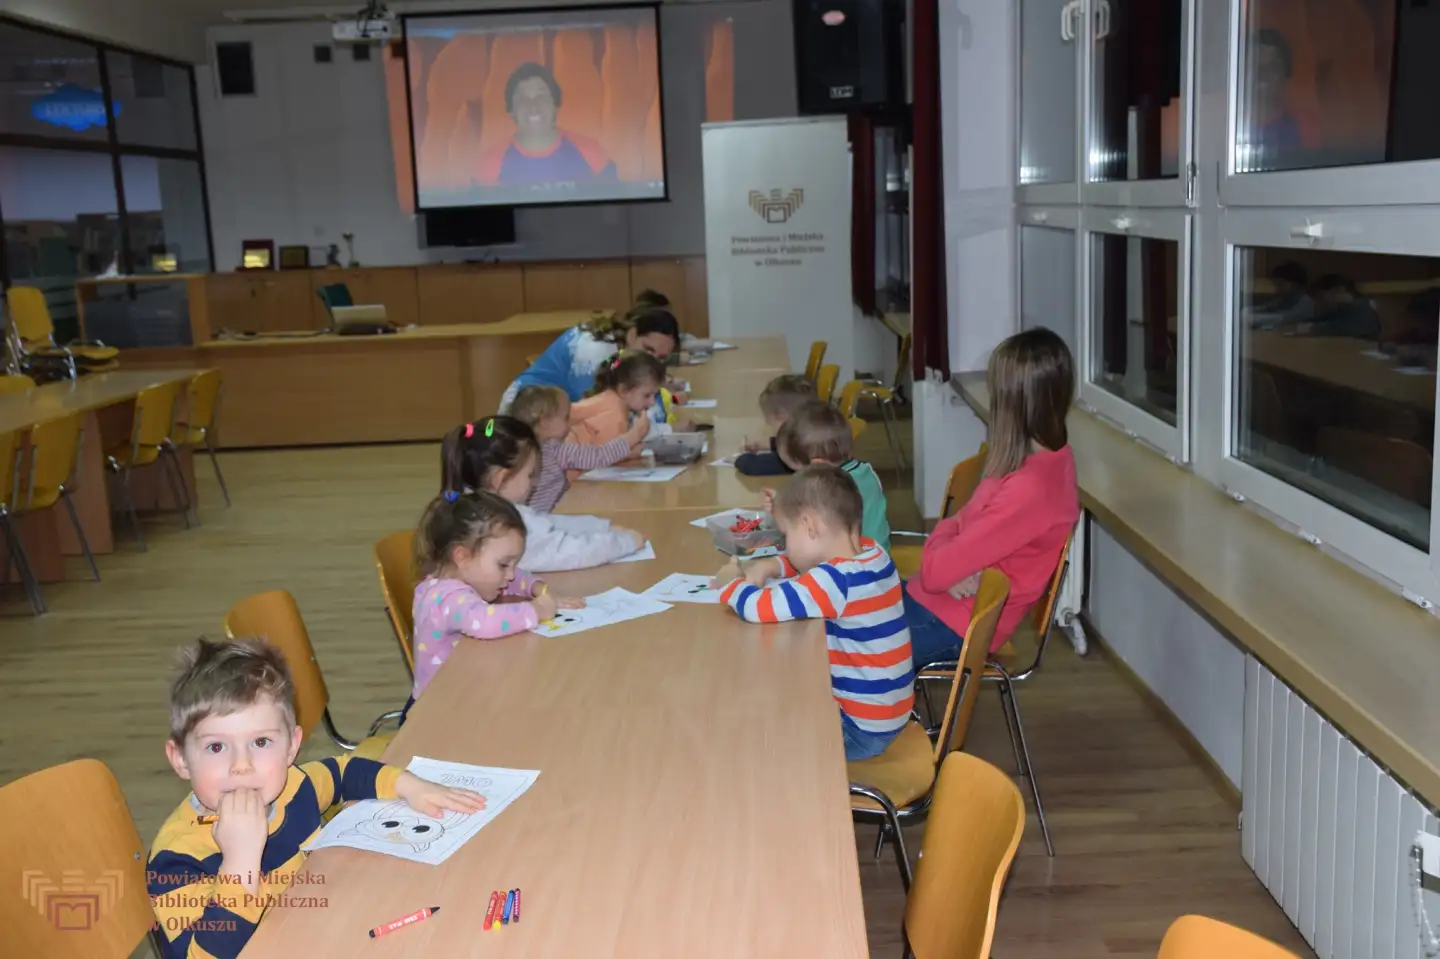 Zdjęcie zostało zrobione w czytelni Biblioteki. Przedstawia grupę dzieci siedzących przy stolikach i malujących obrazek sowy.